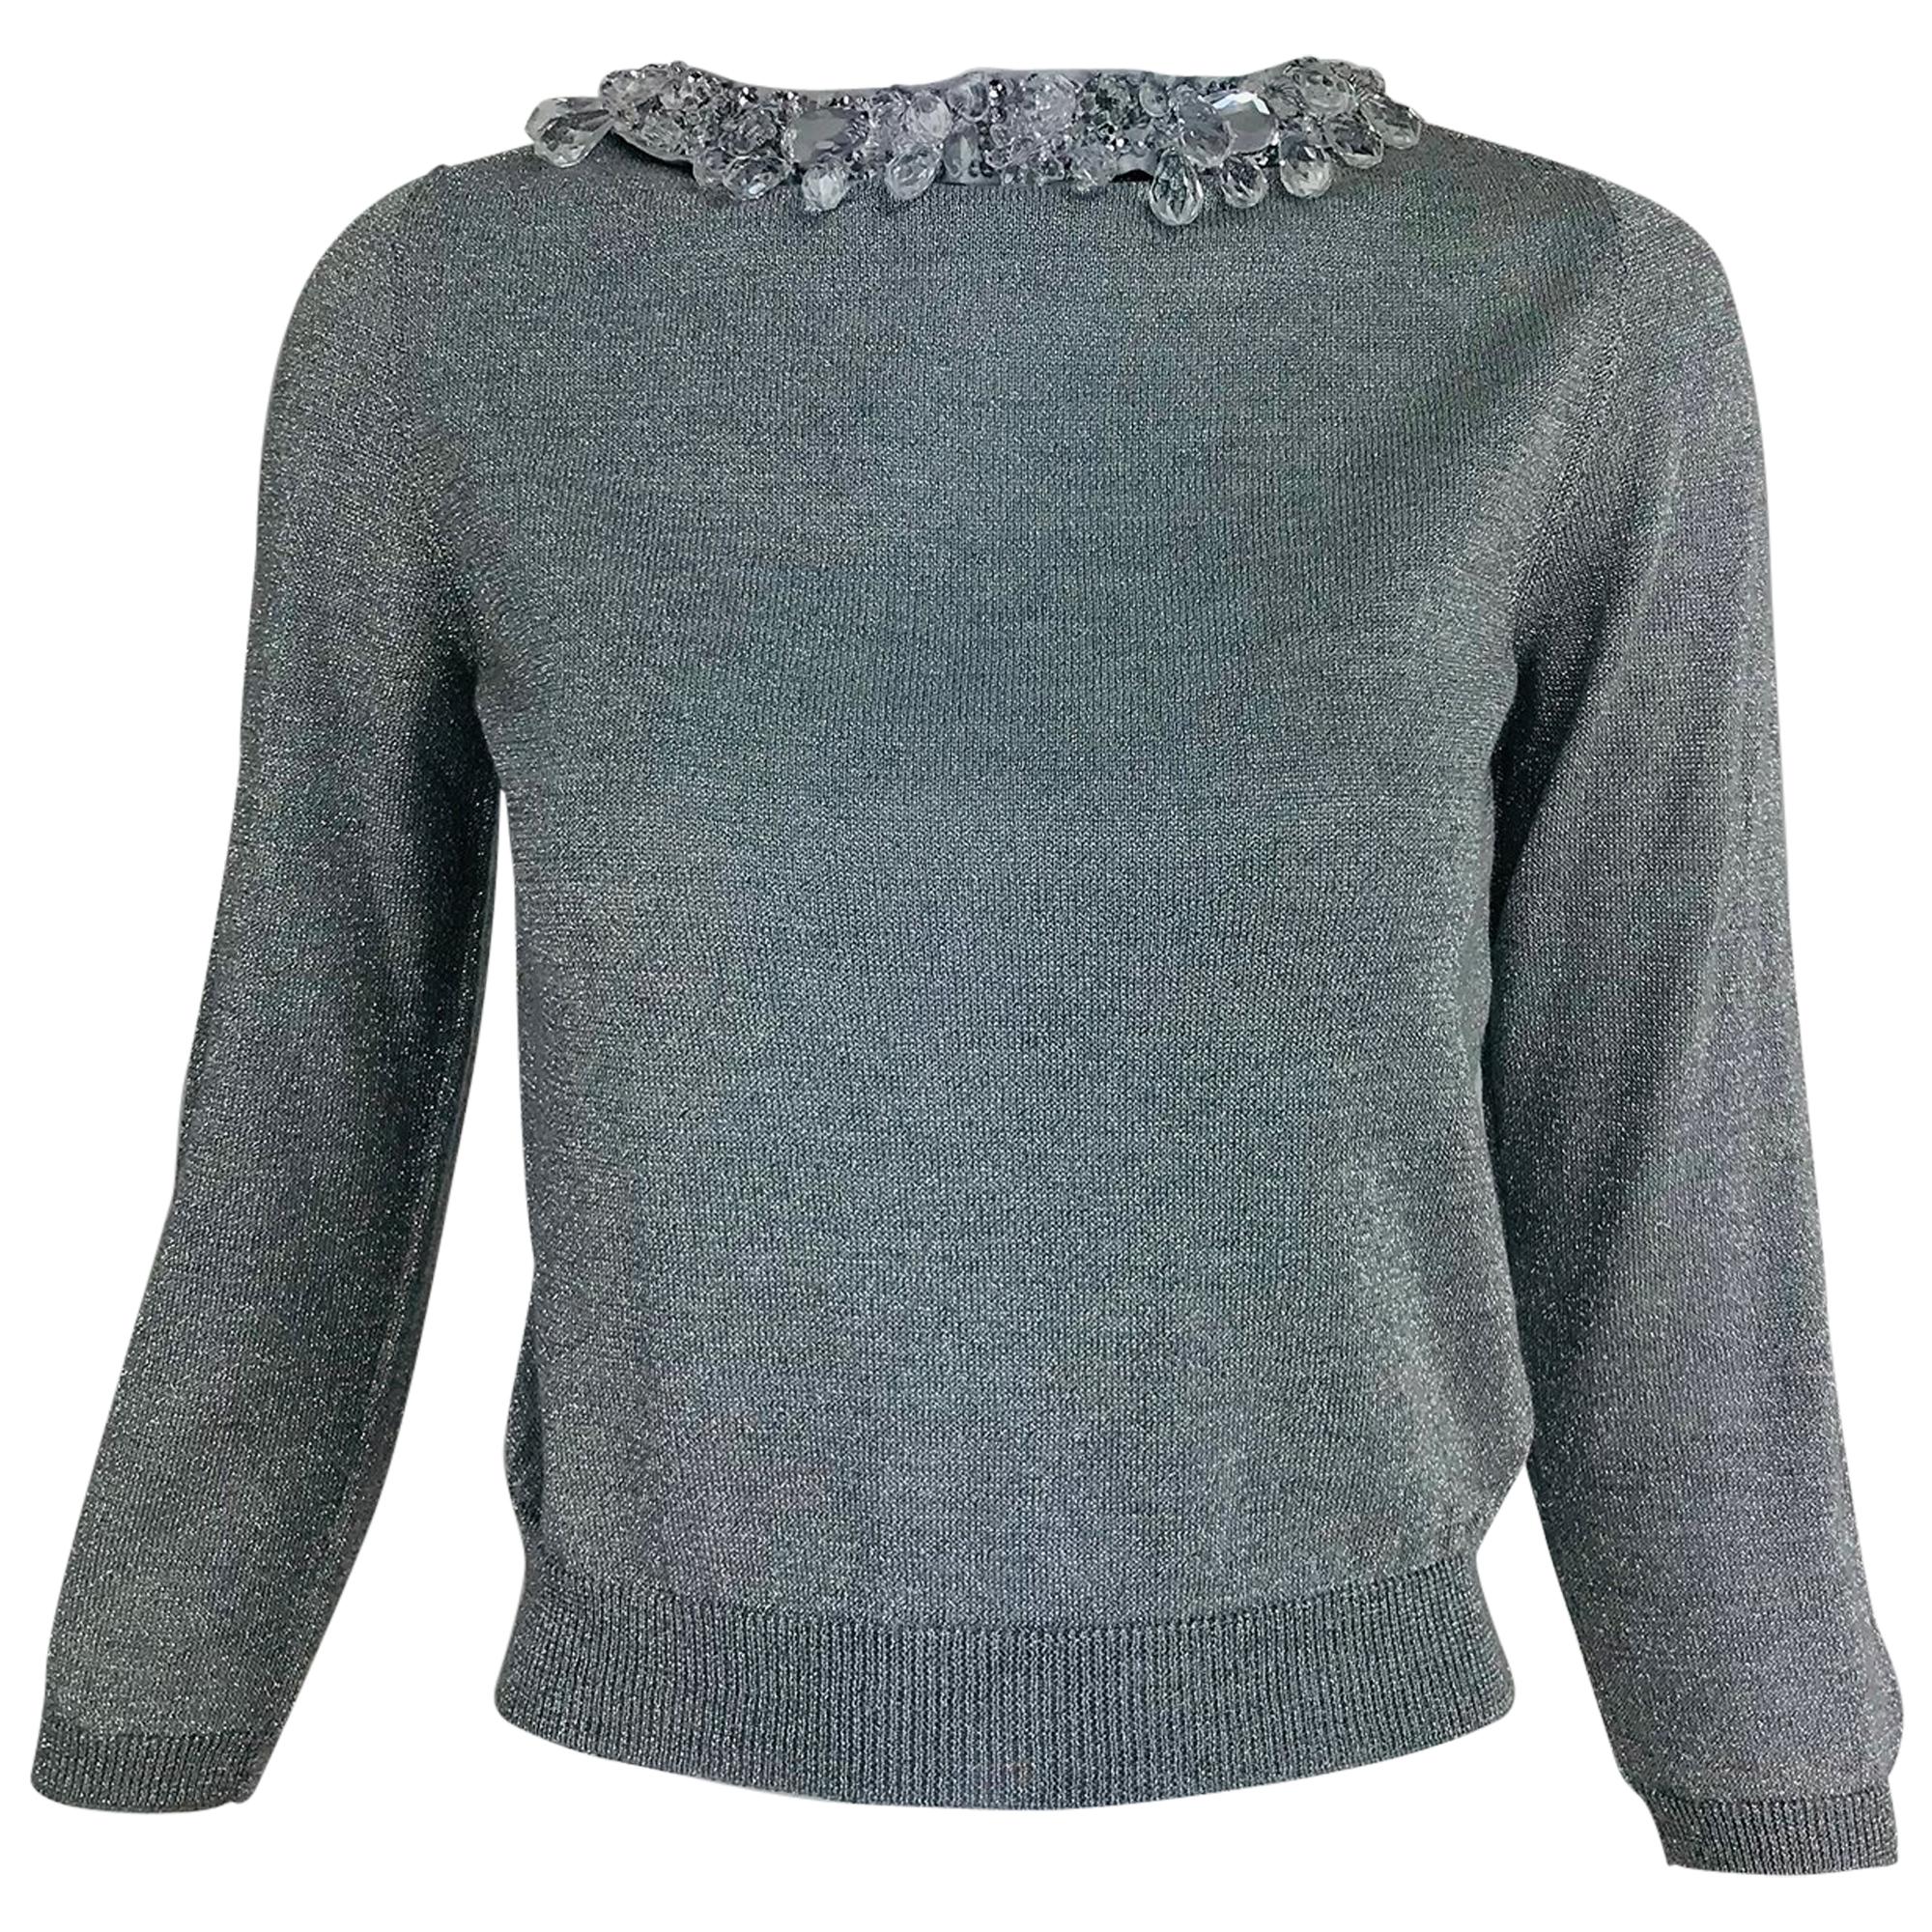 Prada silver metallic grey rhinestone collar cardigan sweater